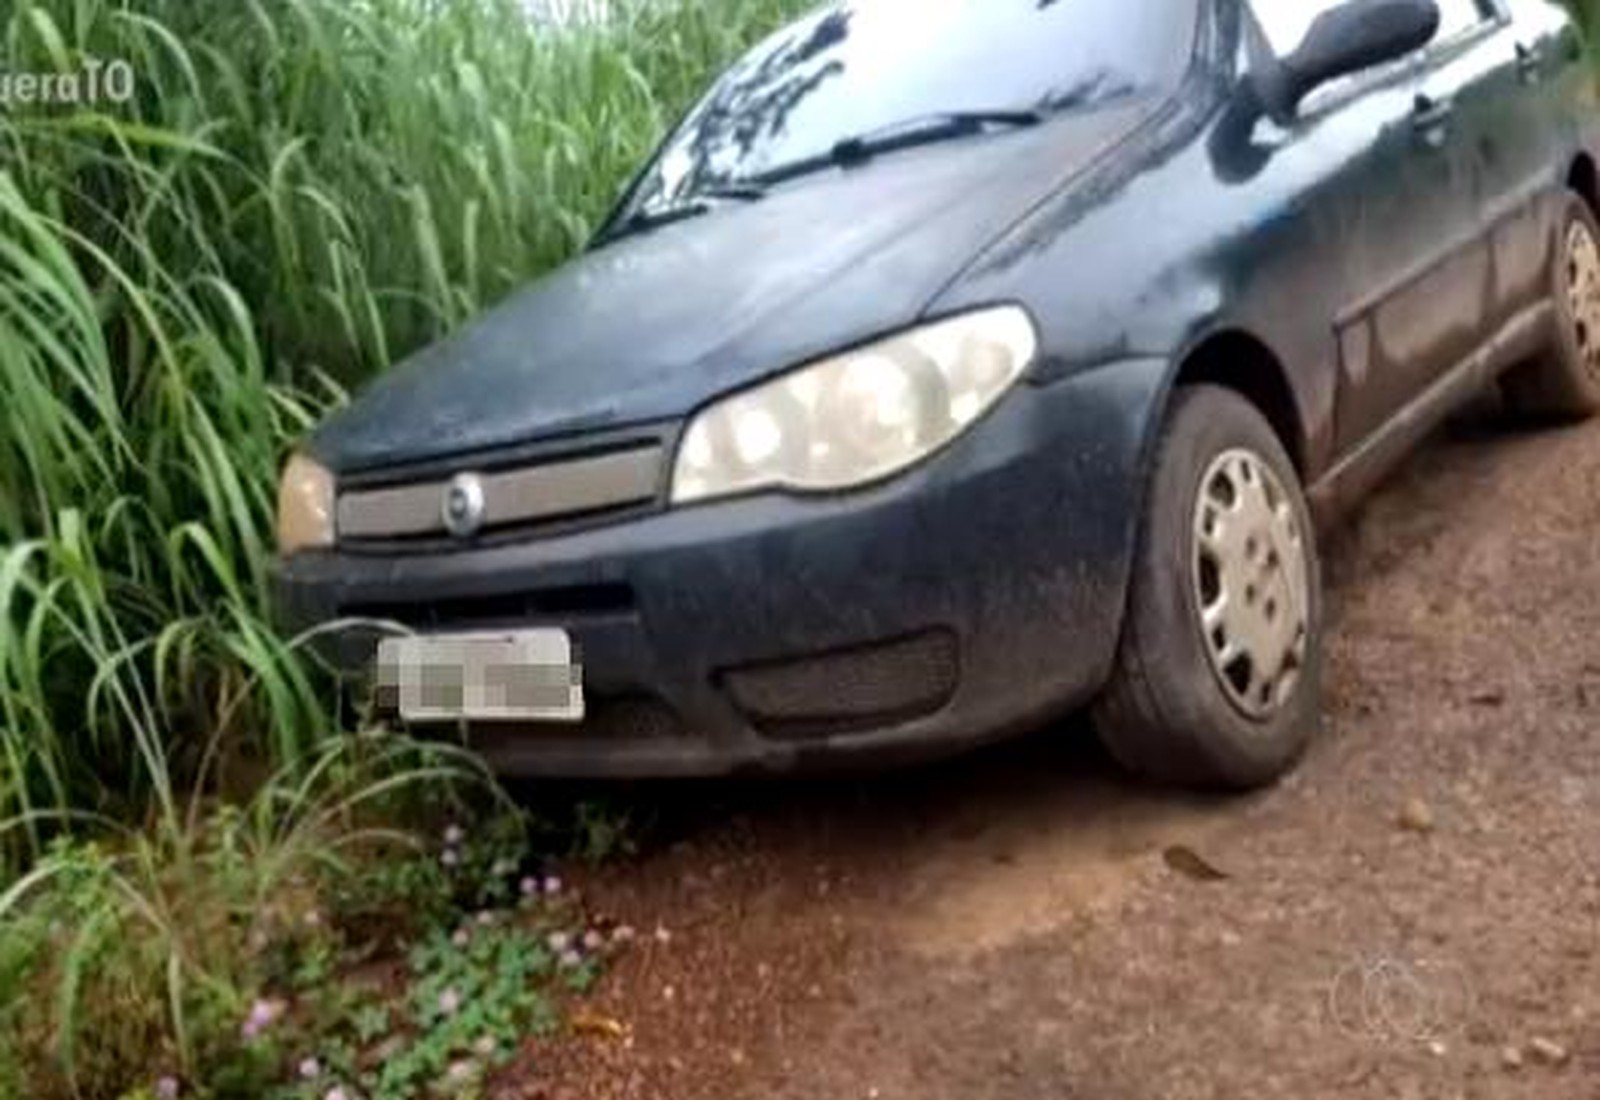 Desaparecimento de dois jovens há mais de uma semana deixa famílias preocupadas; carro em que estavam é encontrado abandonado em fazenda em Aparecido do Rio Negro